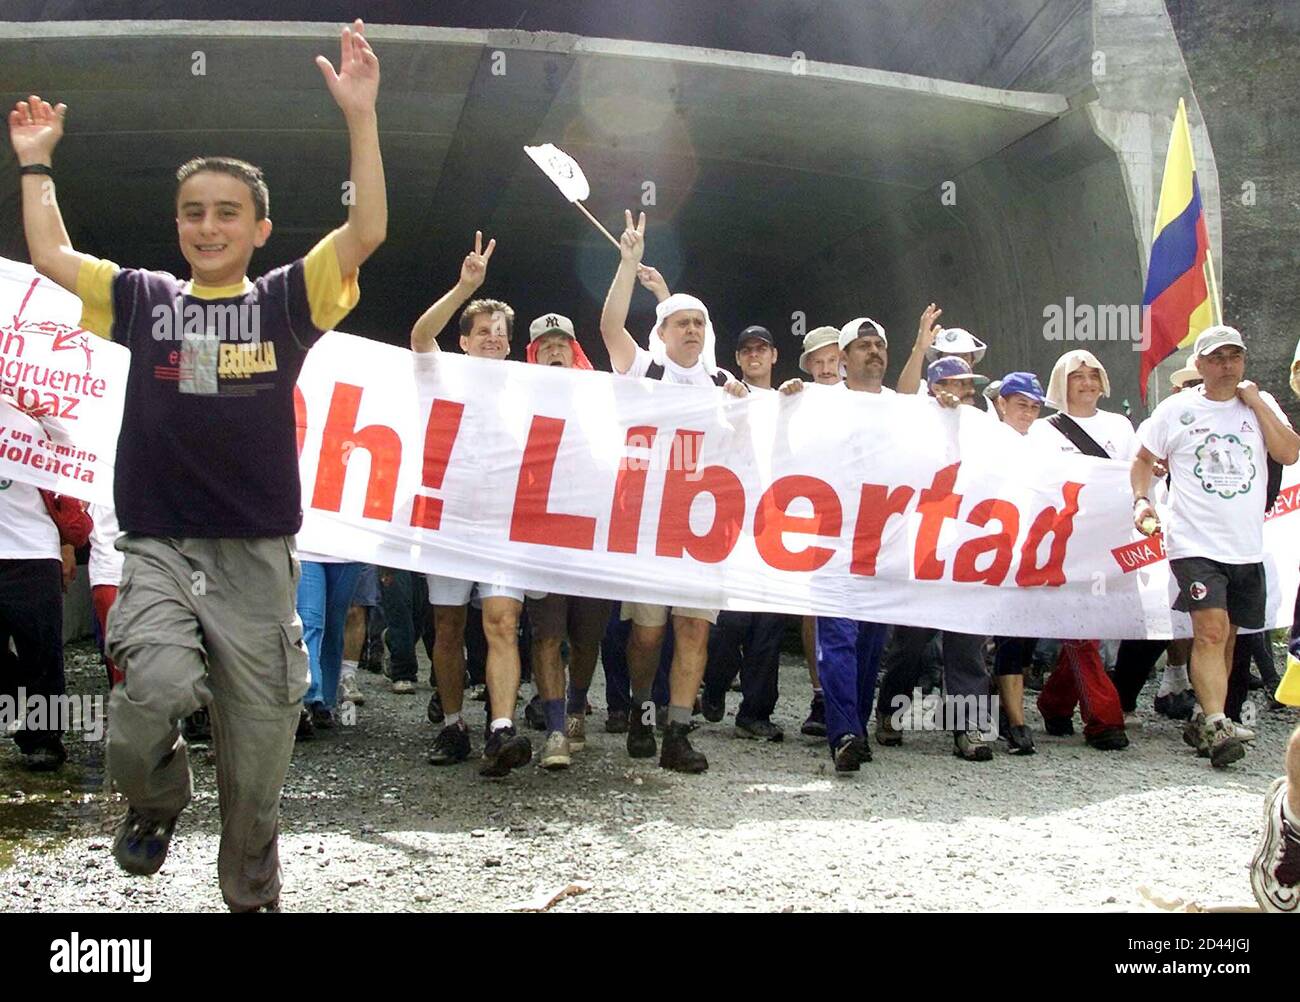 Demonstranten marschieren in der Nähe von San Geronimo, als sie für die Freilassung des Gouverneurs Guillermo Gaviria des Staates Antioquia, 30. November 2002 protestieren. Die revolutionäre Armee Kolumbiens, bekannt unter dem spanischen Akronym FARC, hält Dutzende von hochrangigen Gefangenen, darunter Guillermo, die sie gegen inhaftierte Guerillas tauschen will. Es hat auch Hunderte von weniger bekannten Gefangenen, ergriffen um Lösegeld, in provisorischen Gefängnissen in Dschungel und Berge. REUTERS/Albeiro Lopera JMG Stockfoto